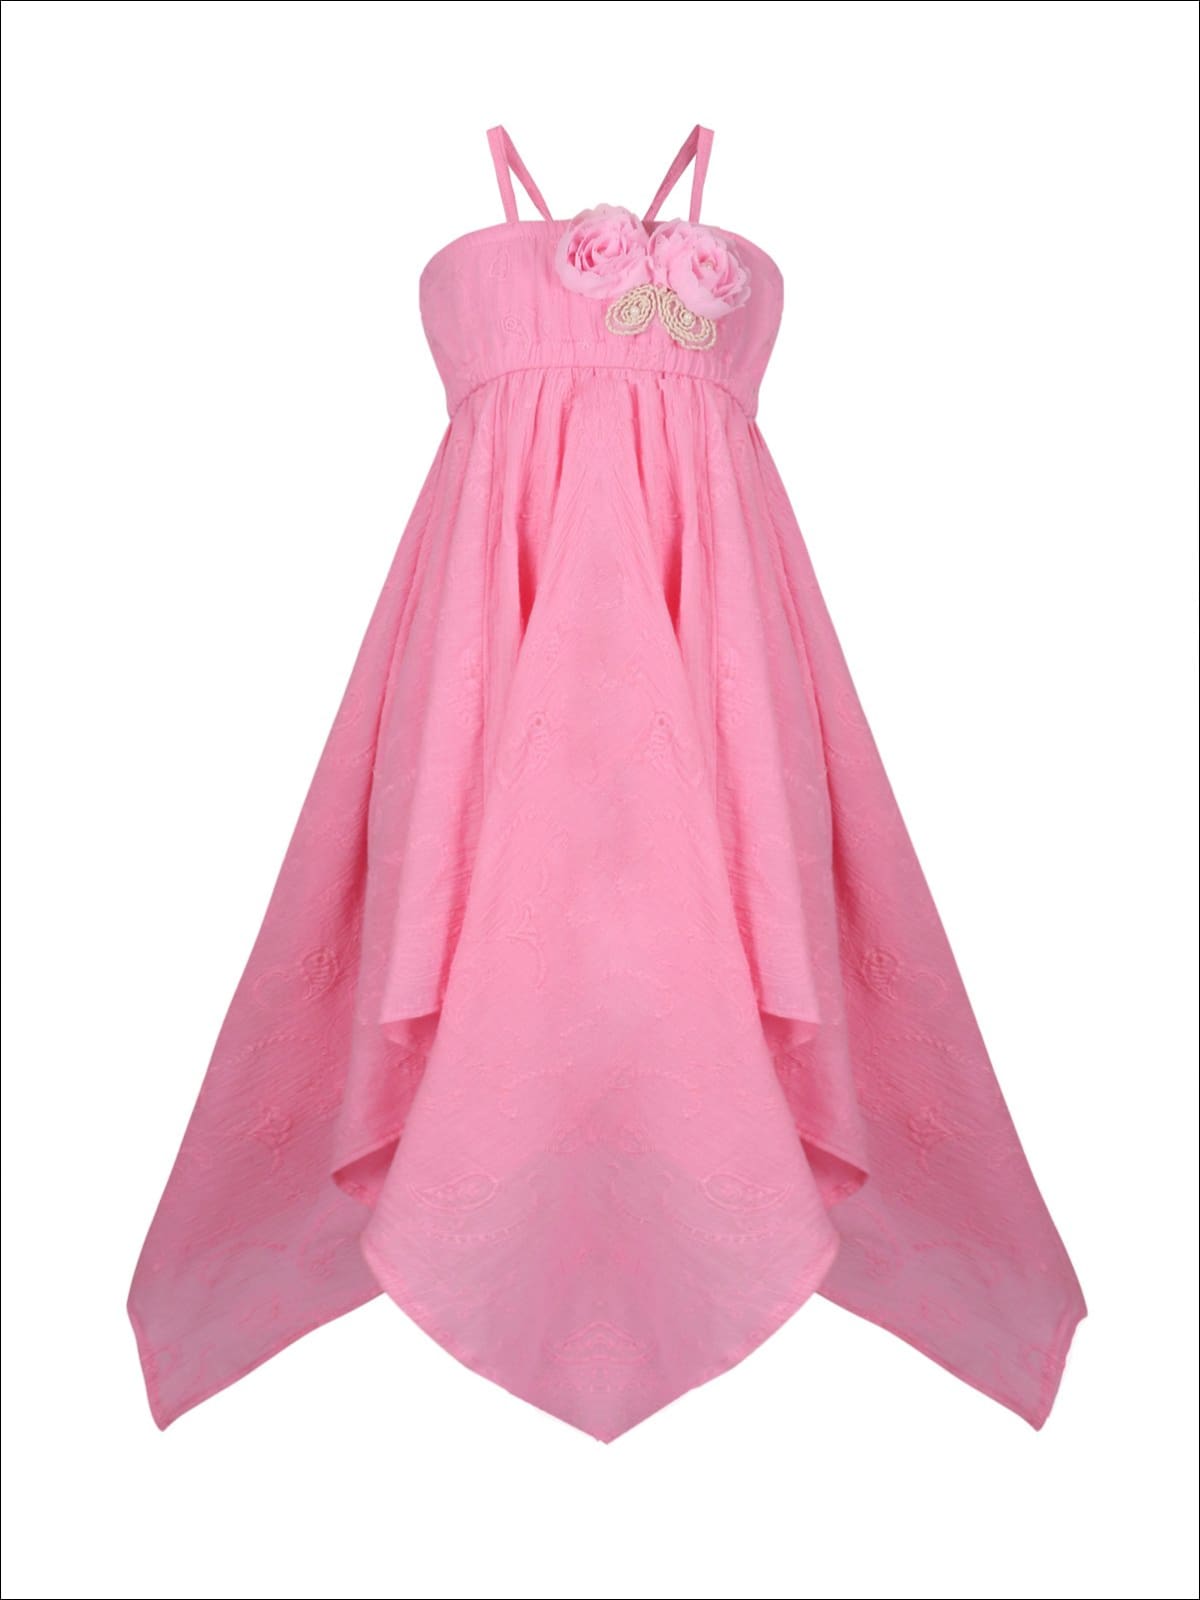 Girls Flower Applique Hankerchief Dress - Pink / 2T/3T - Girls Spring Casual Dress